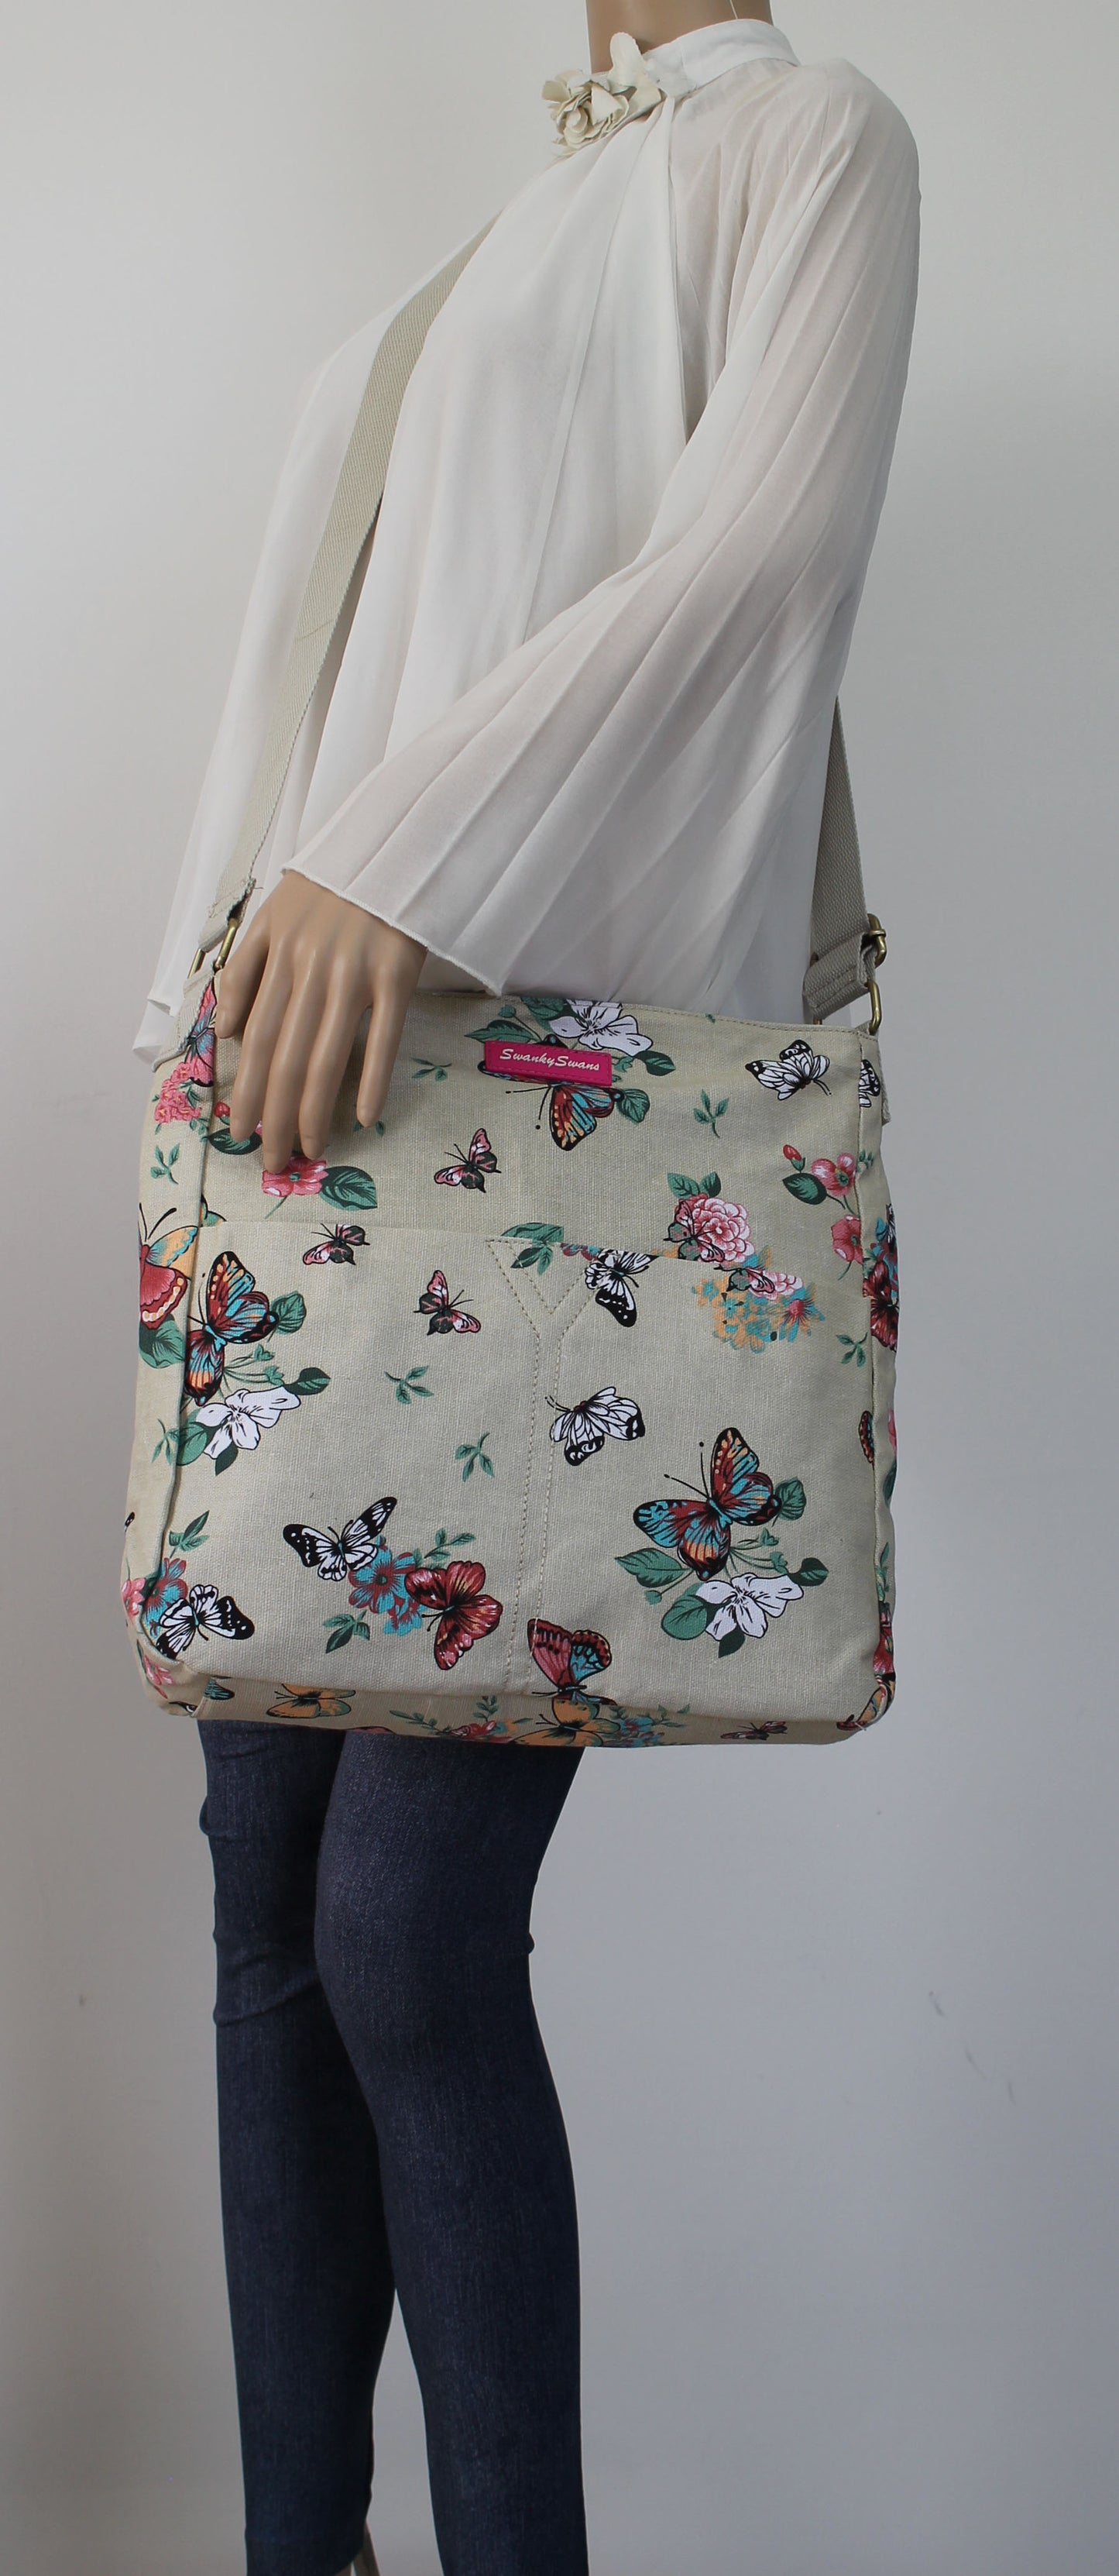 Swanky Swans Casper Butterfly Print Crossbody Bag in BeigeWomens Girls Boys School Crossbody Animal Cute